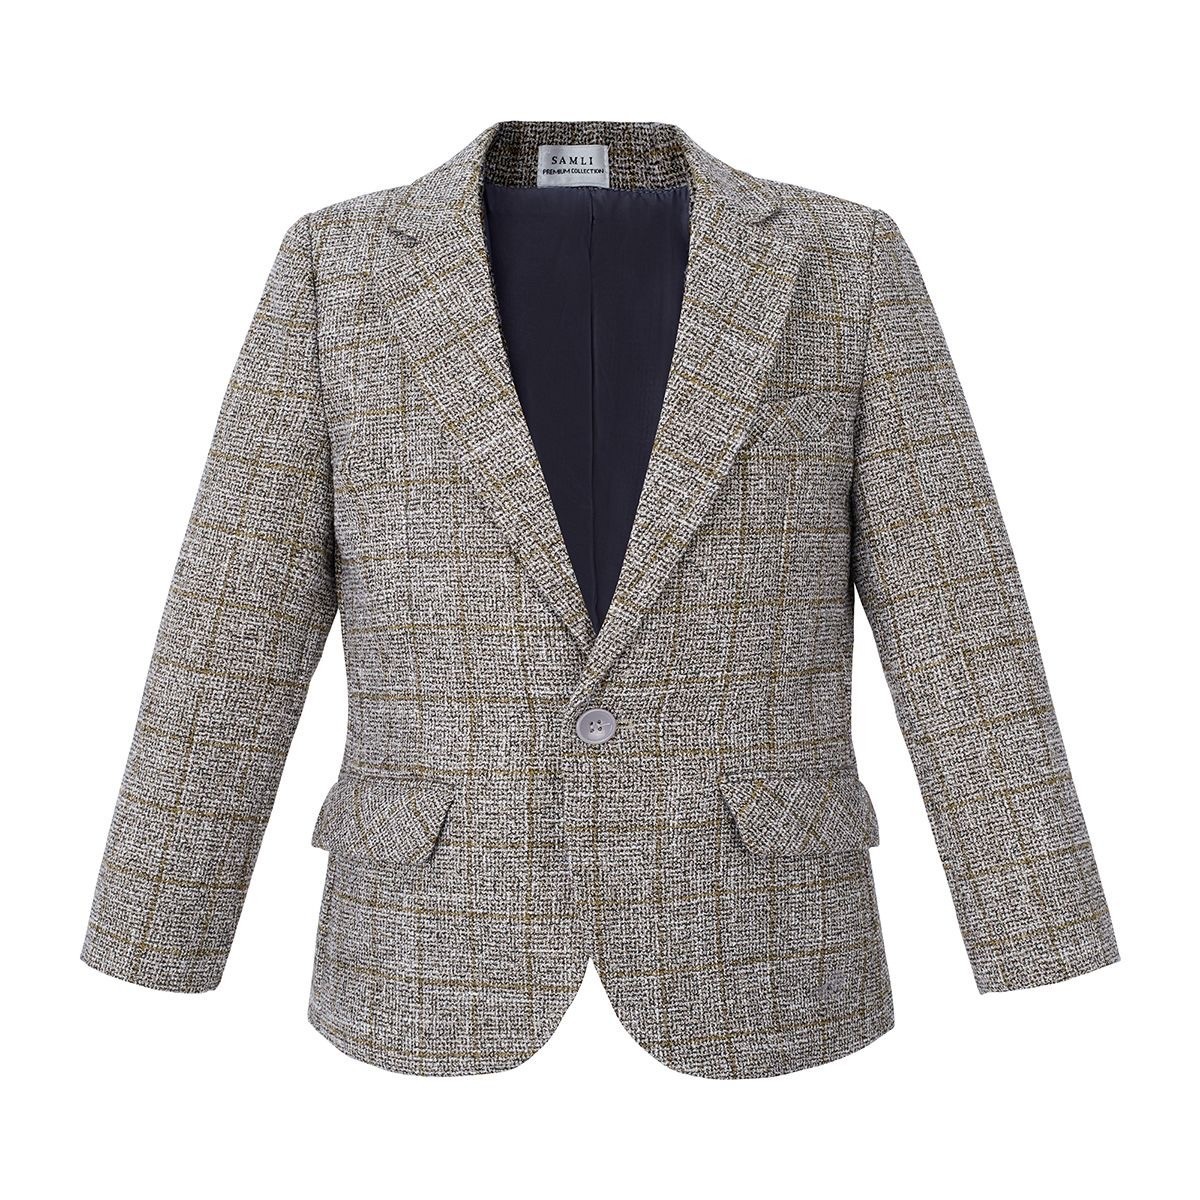 Jungen-Baumwoll-Tweed-ähnlicher Karo-Tailored-Fit-Blazer - Beige